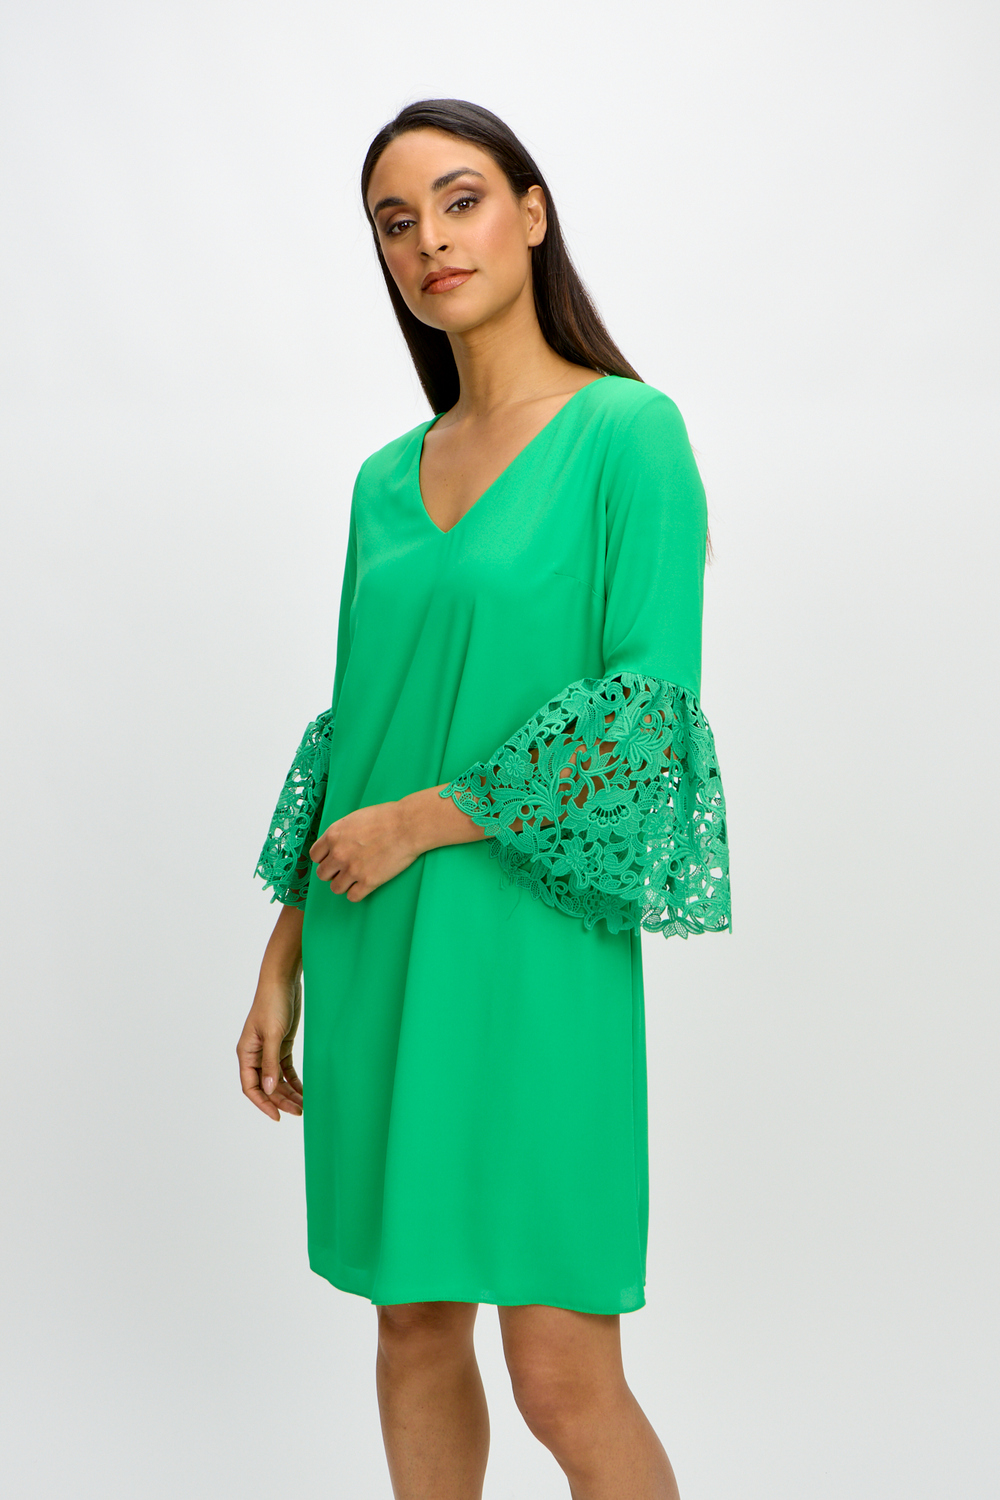 Ruffle & Lace Dress Style 241252. Island Green